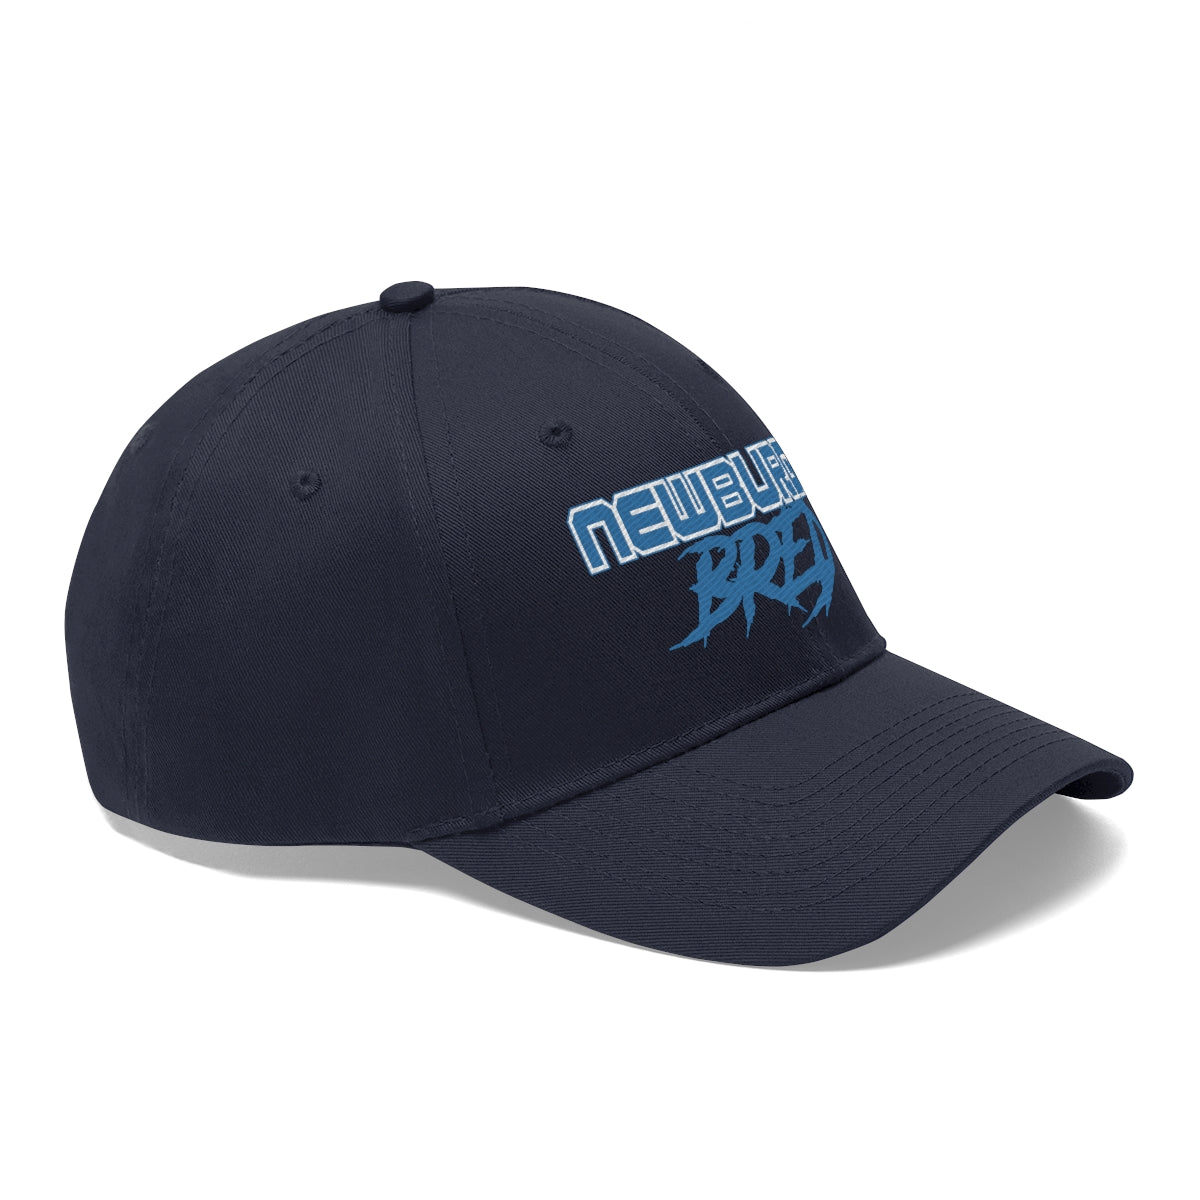 Newburgh Bred Blue Scheme Unisex Twill Hat